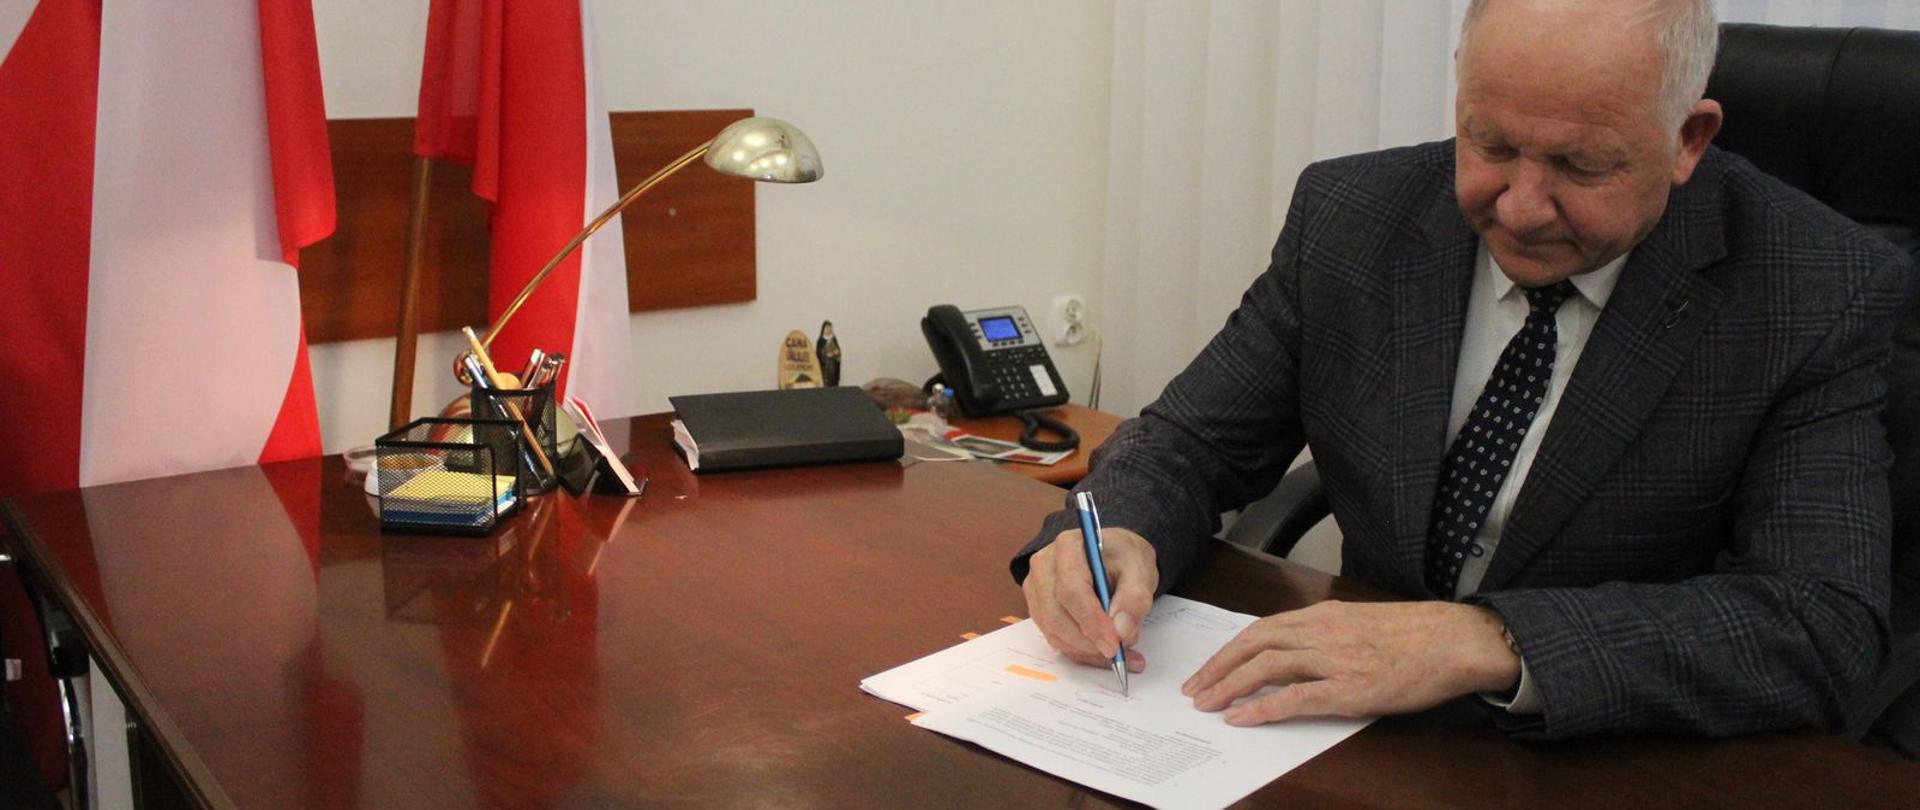 W prawej części fotografii Burmistrz Miasta podpisujący dokumenty, w lewej części flaga Polski biało-czerwona. 